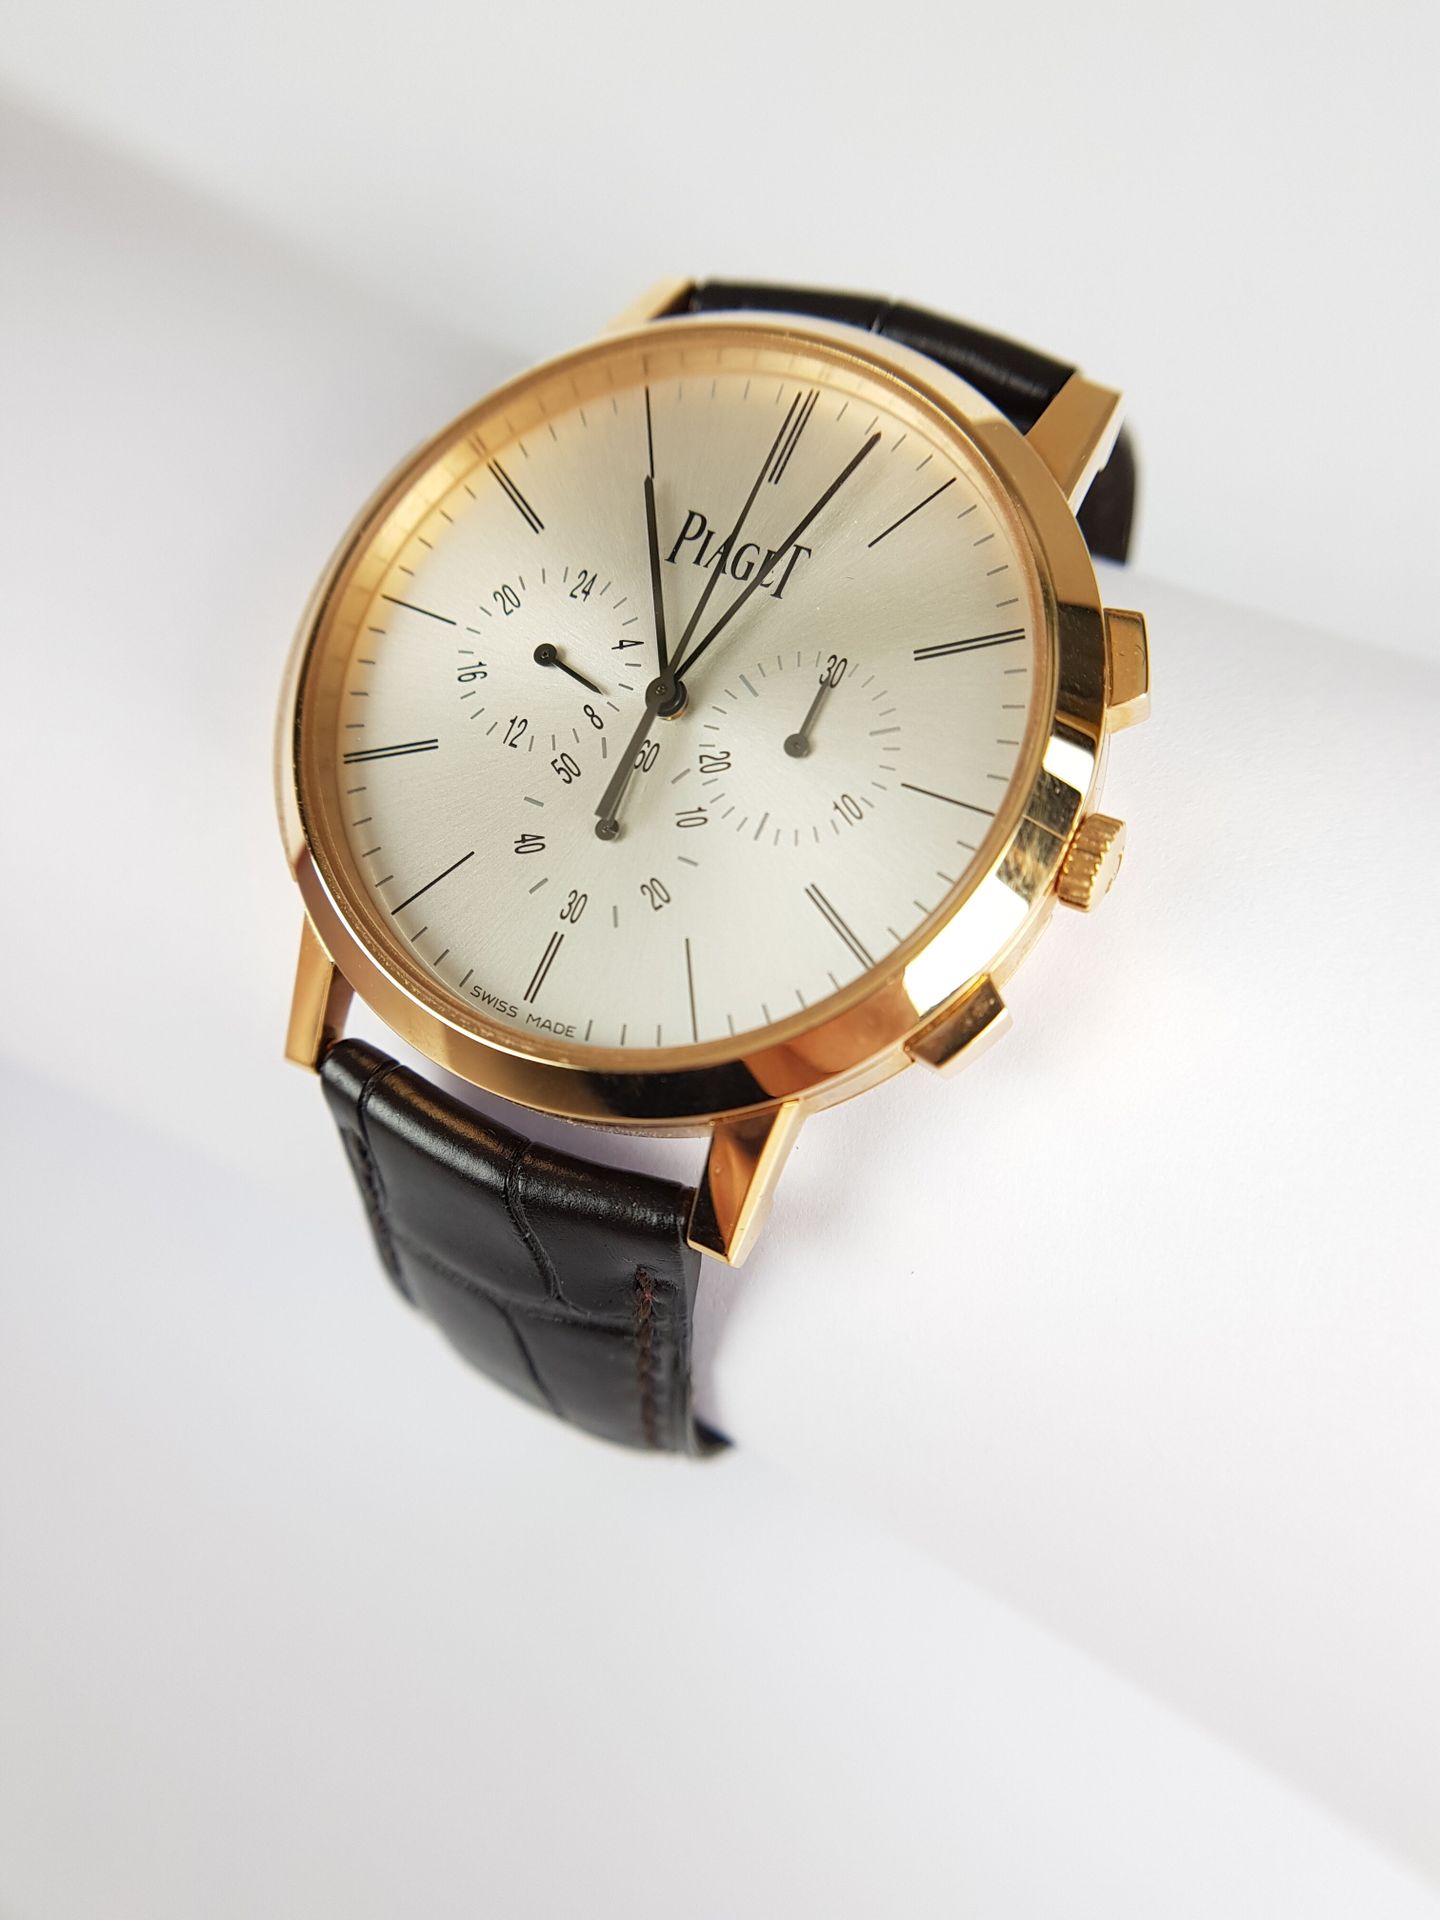 Null Mise à prix : 4 000 €

PIAGET

Altiplano

Montre chronographe en or rouge 7&hellip;